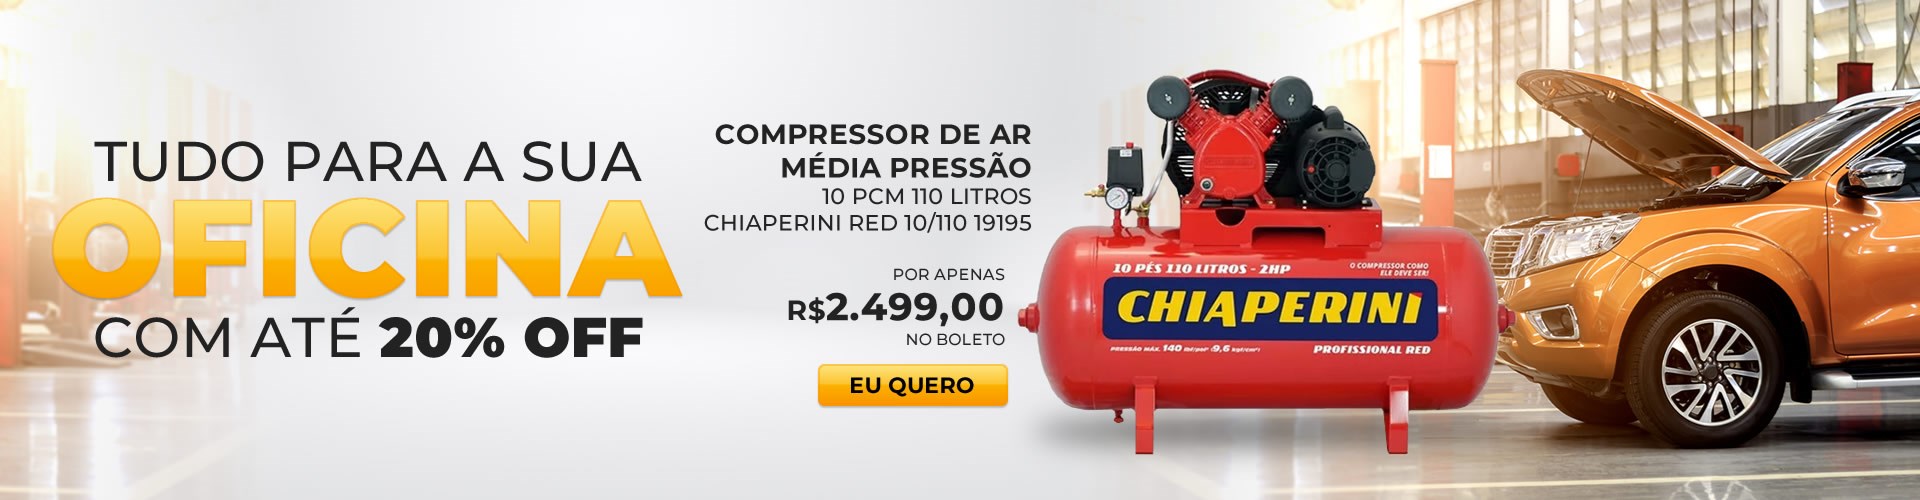 Compressor De Ar Média Pressão 10 Pcm 110 litros Chiaperini Red 10/110 19195